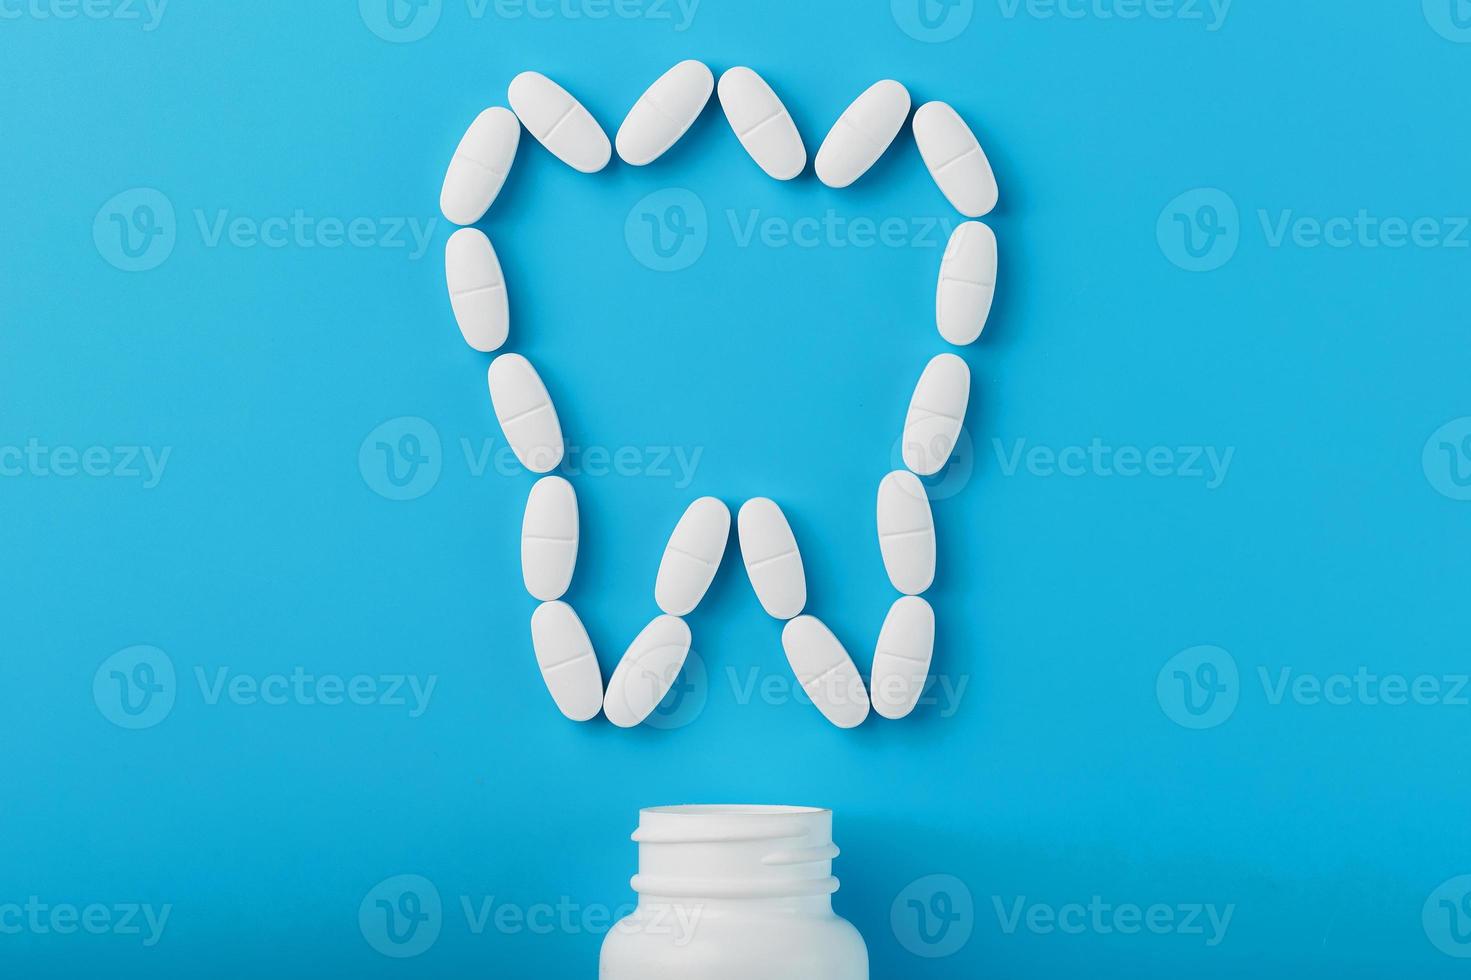 vitaminas blancas con calcio ca, d3 en forma de diente esparcido de un frasco blanco sobre un fondo azul foto